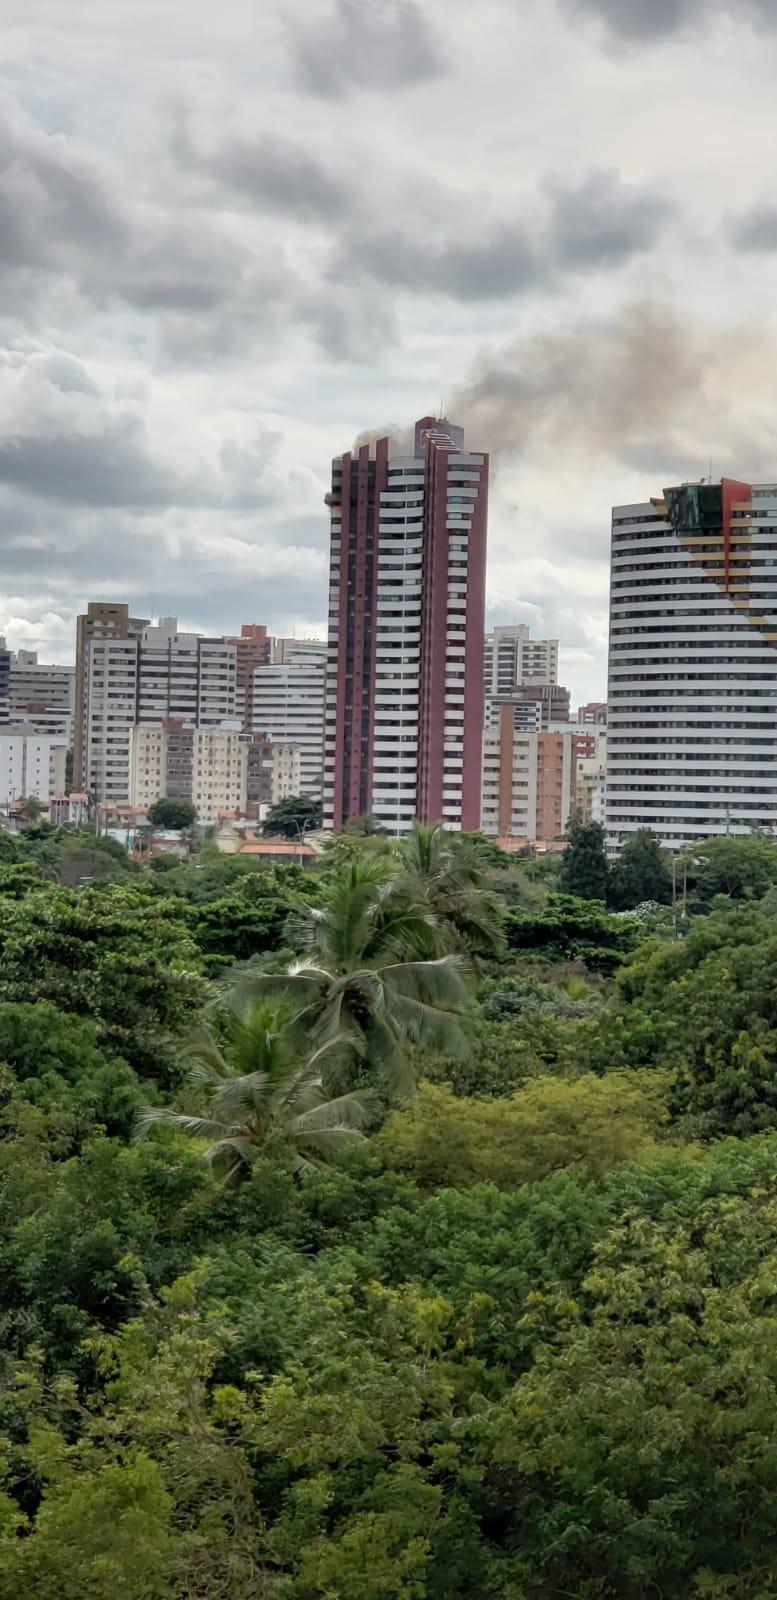 Incêndio atinge apartamento no bairro Boqueirão, em Curitiba - Bem